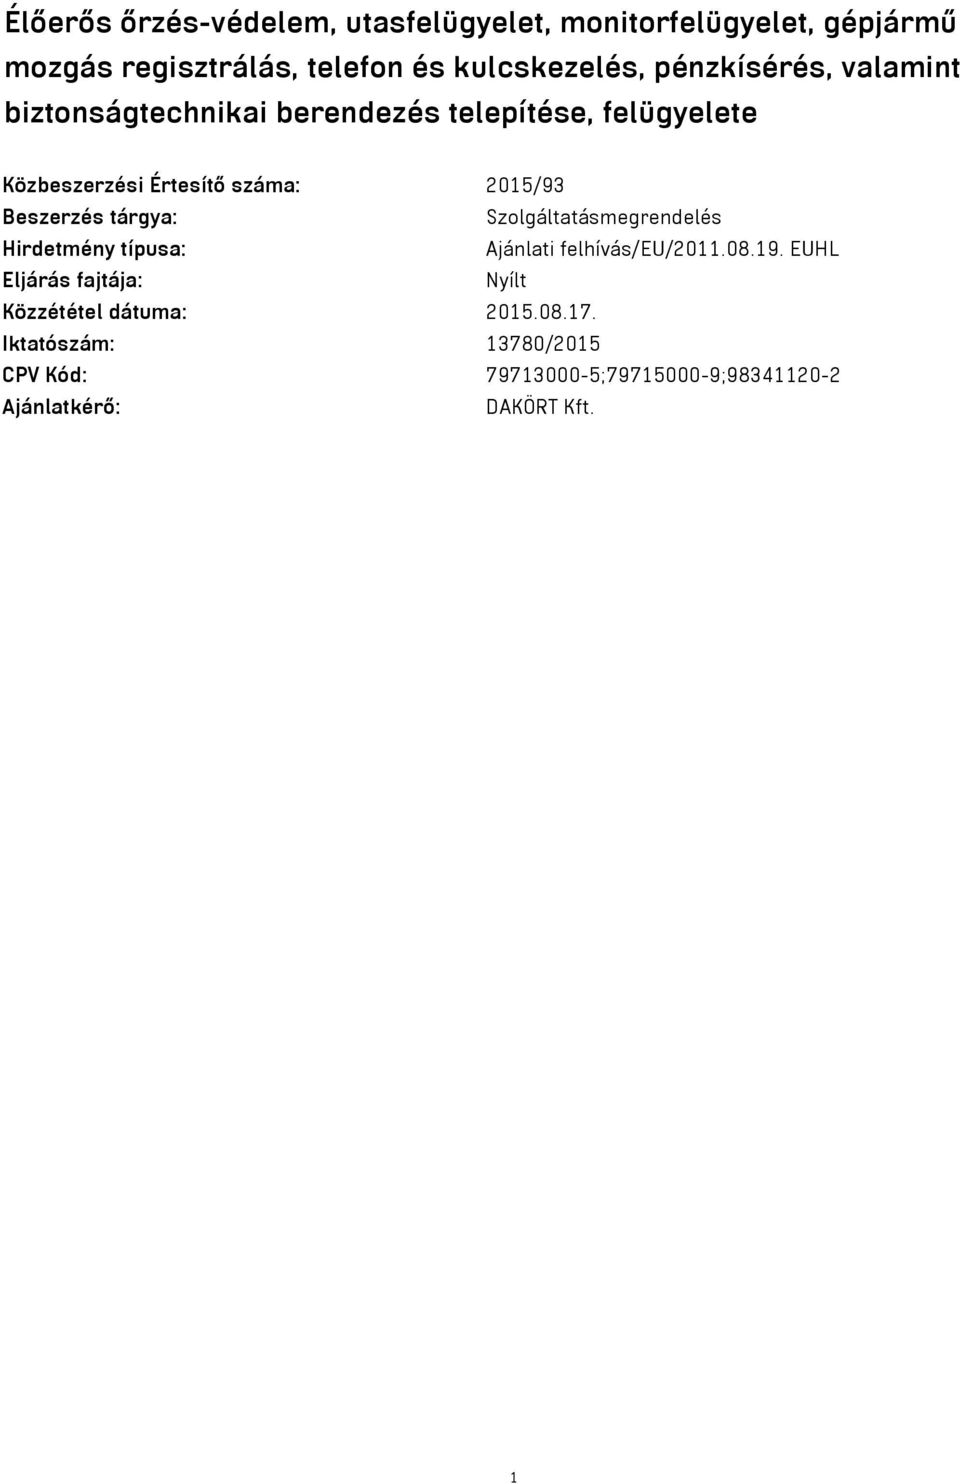 Beszerzés tárgya: Szolgáltatásmegrendelés Hirdetmény típusa: Ajánlati felhívás/eu/2011.08.19.